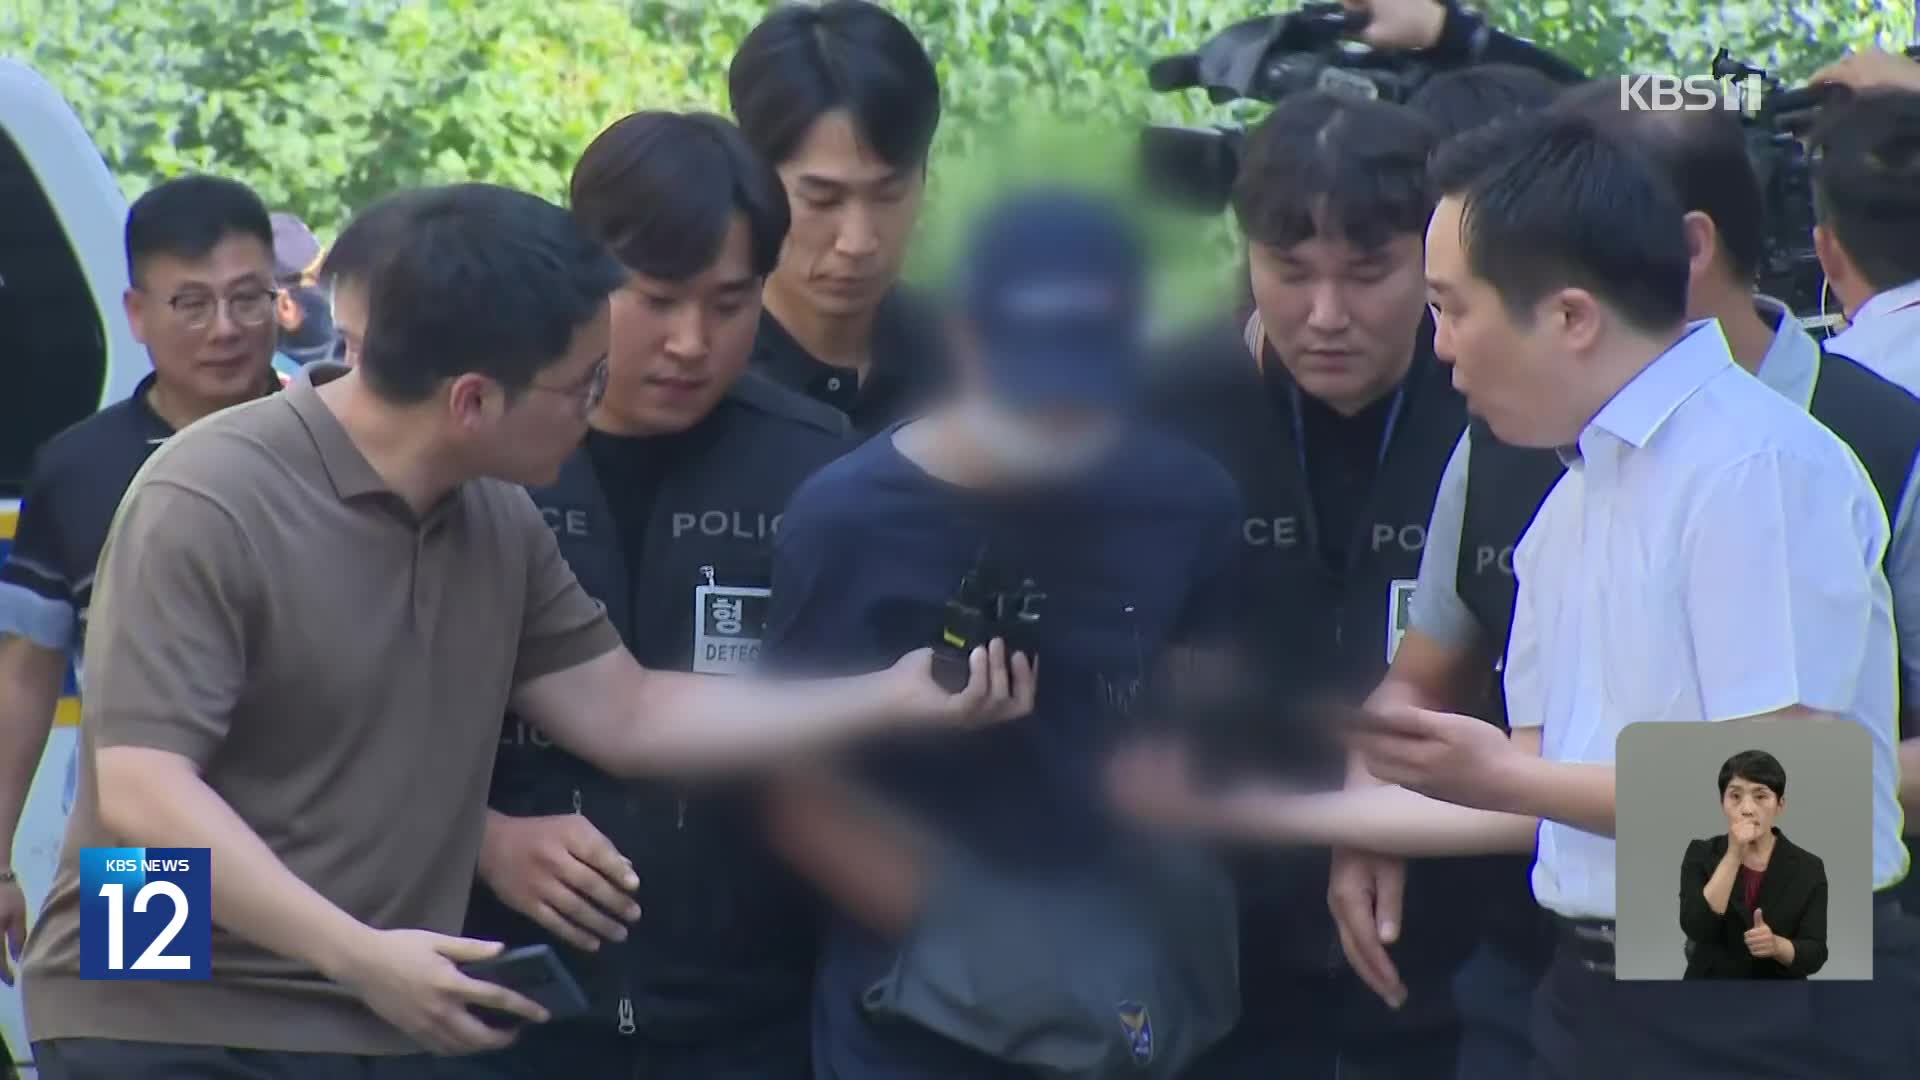 ‘분당 백화점 흉기난동’ 1명 사망…범행 전 ‘신림동 살인’ 검색